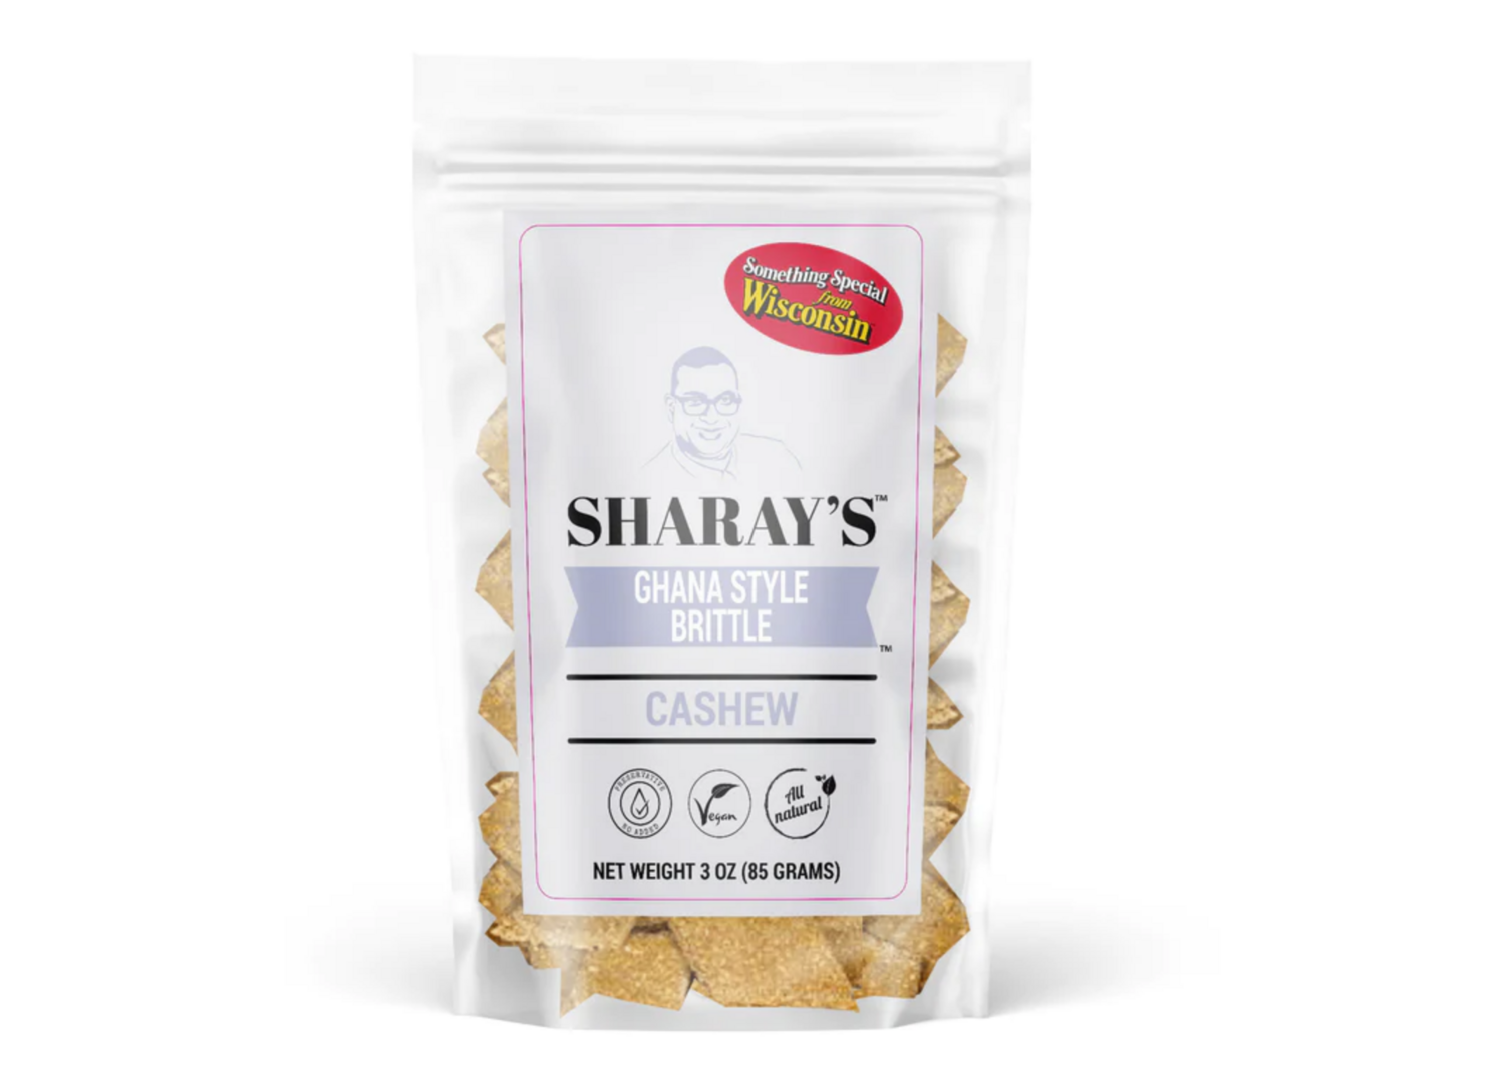 SHA-Cashew Brittle